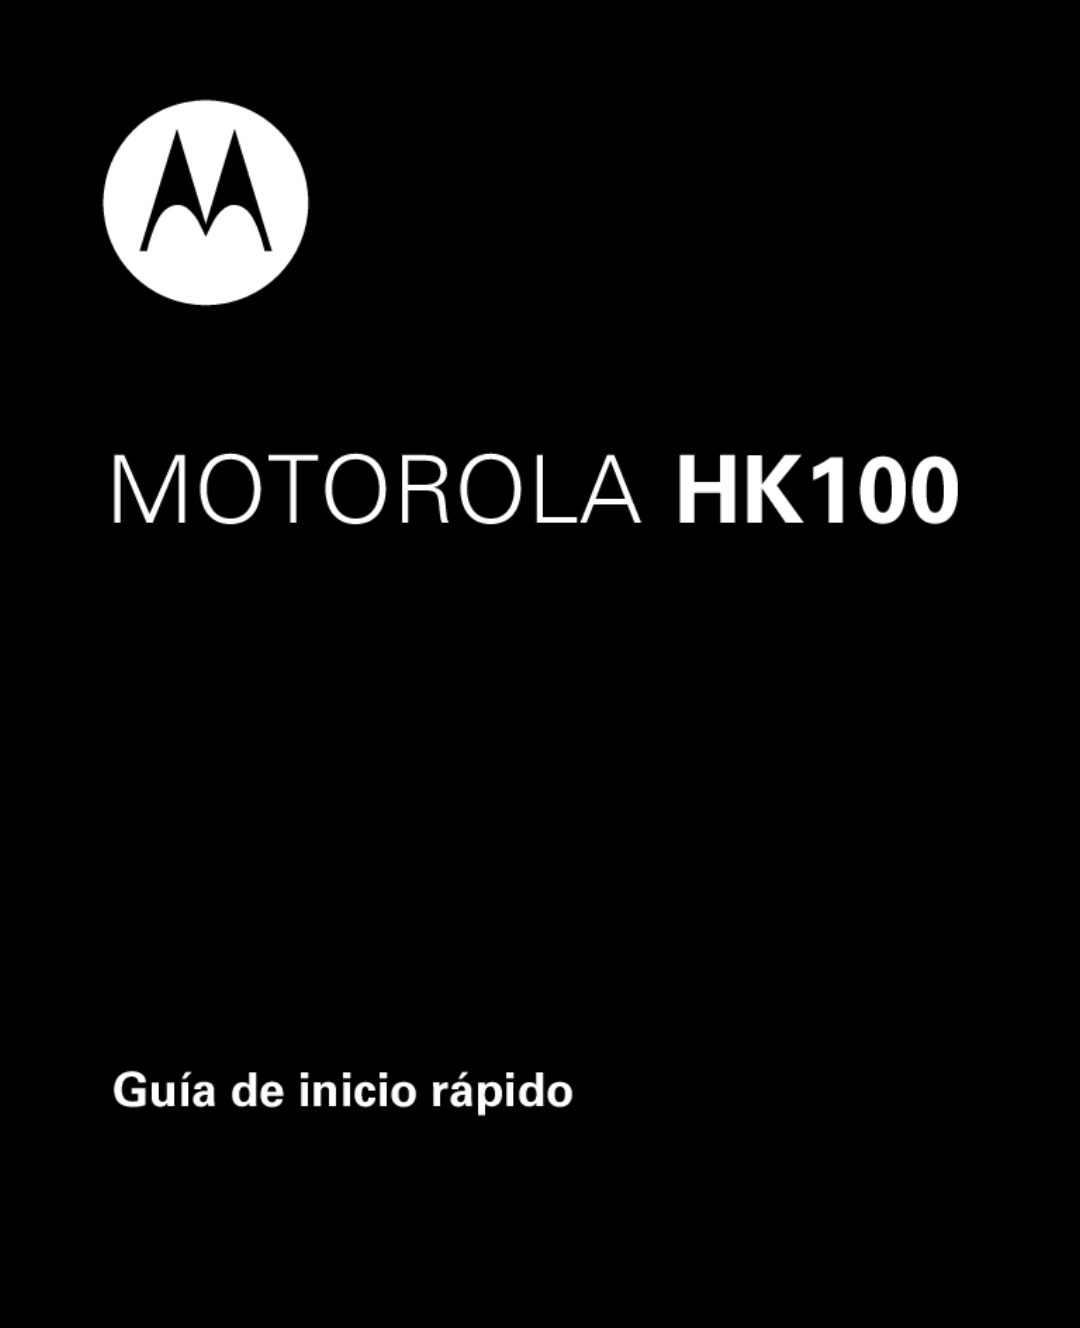 Motorola quick start Guía de inicio rápido, MOTOROLA HK100 